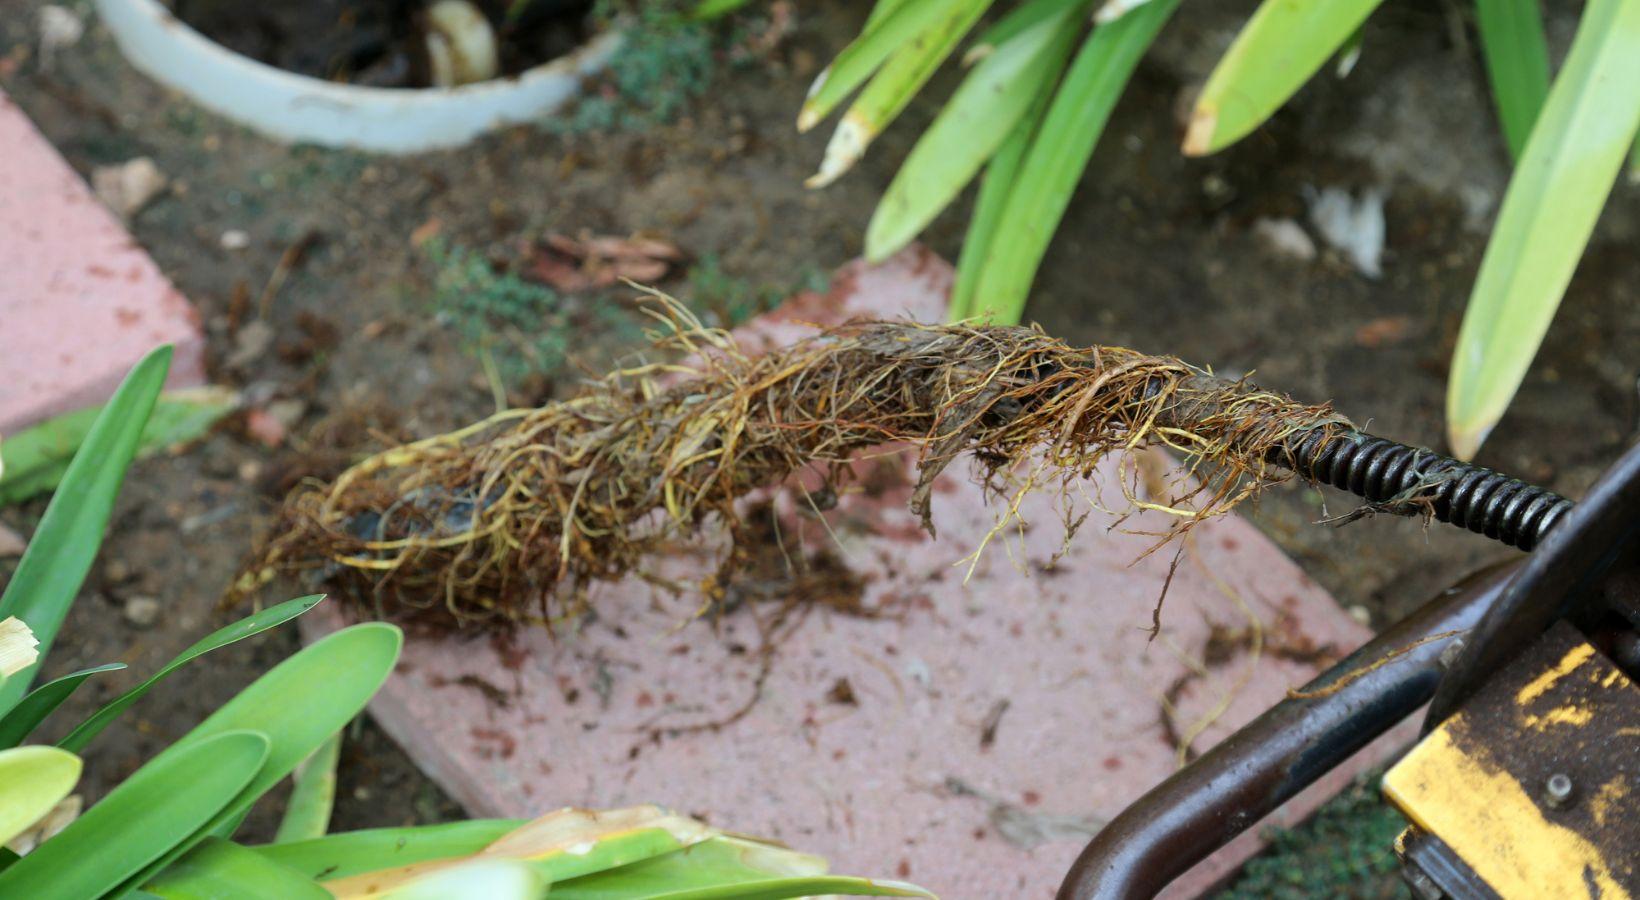 Enlevement de debris et de racines dans les conduites d eau a la louviere